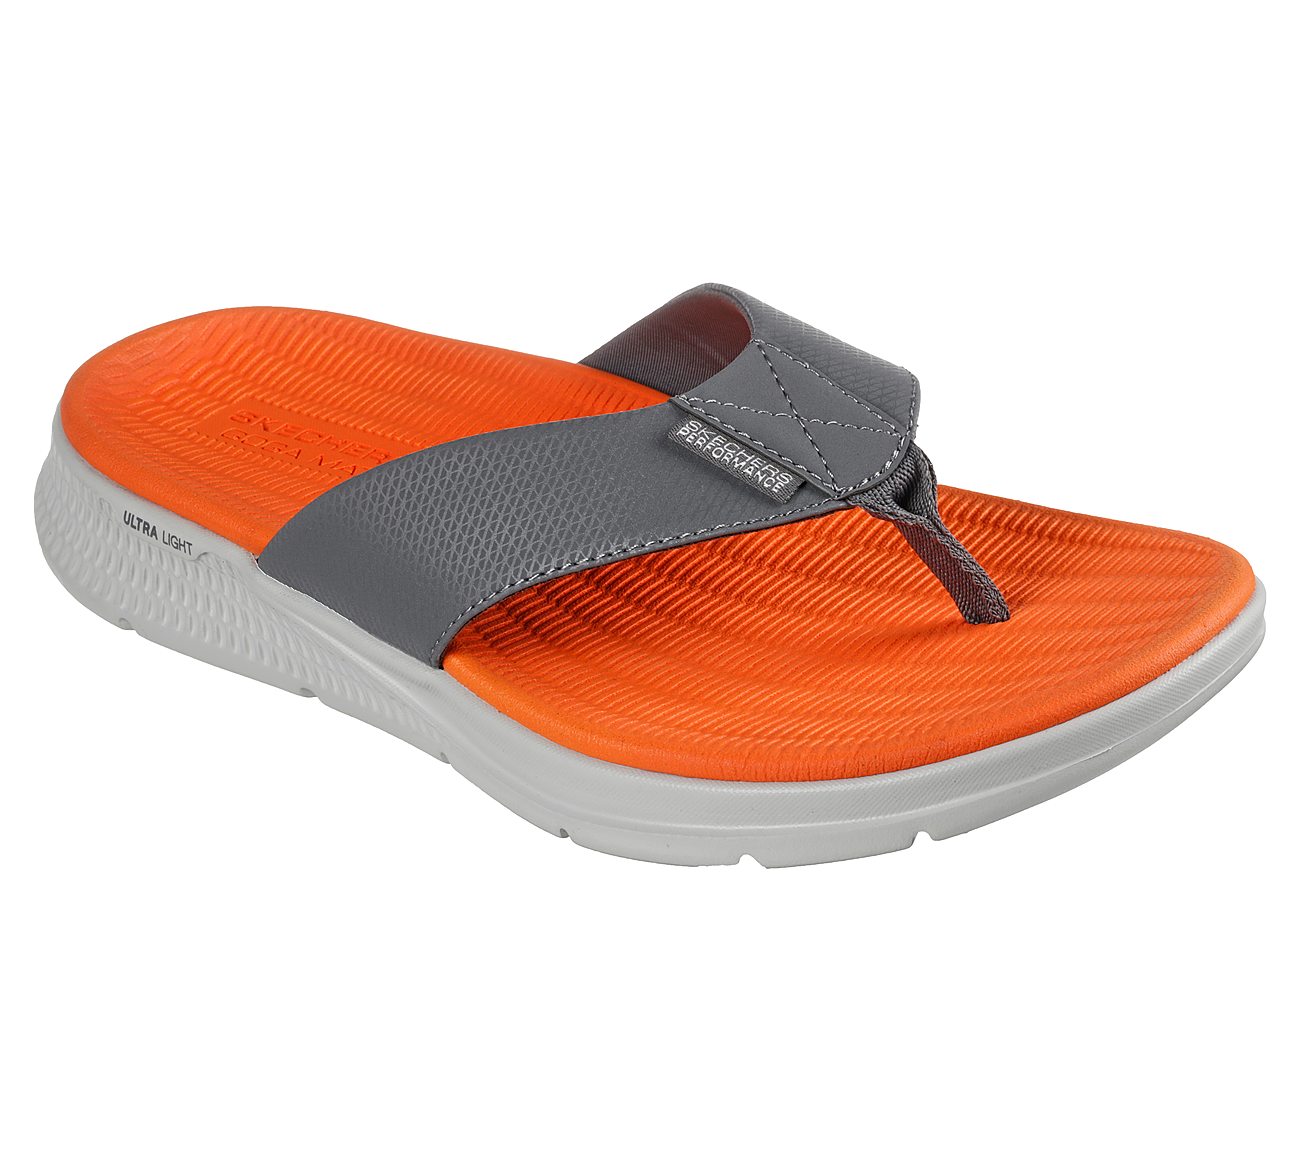 Plain Daily Wear Skechers Slides for Men, Size: 8